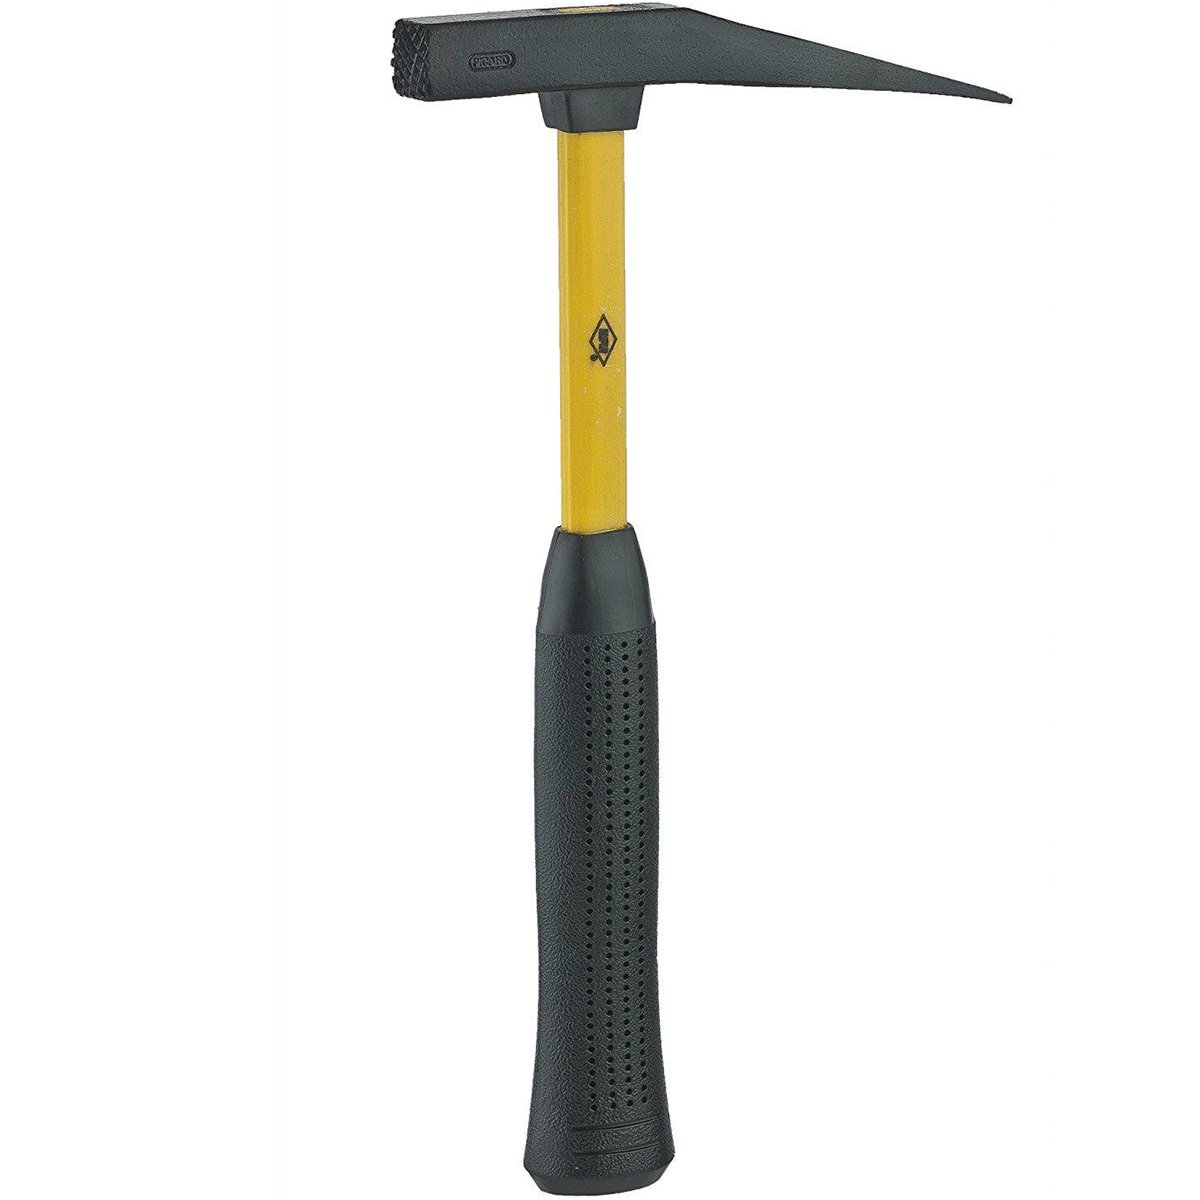 Spitzhammer für Dachdecker; runder Stiel mit zwei starken, geschmiedeten Federn oder mit Fiberglasstiel mit Fiberglasstiel